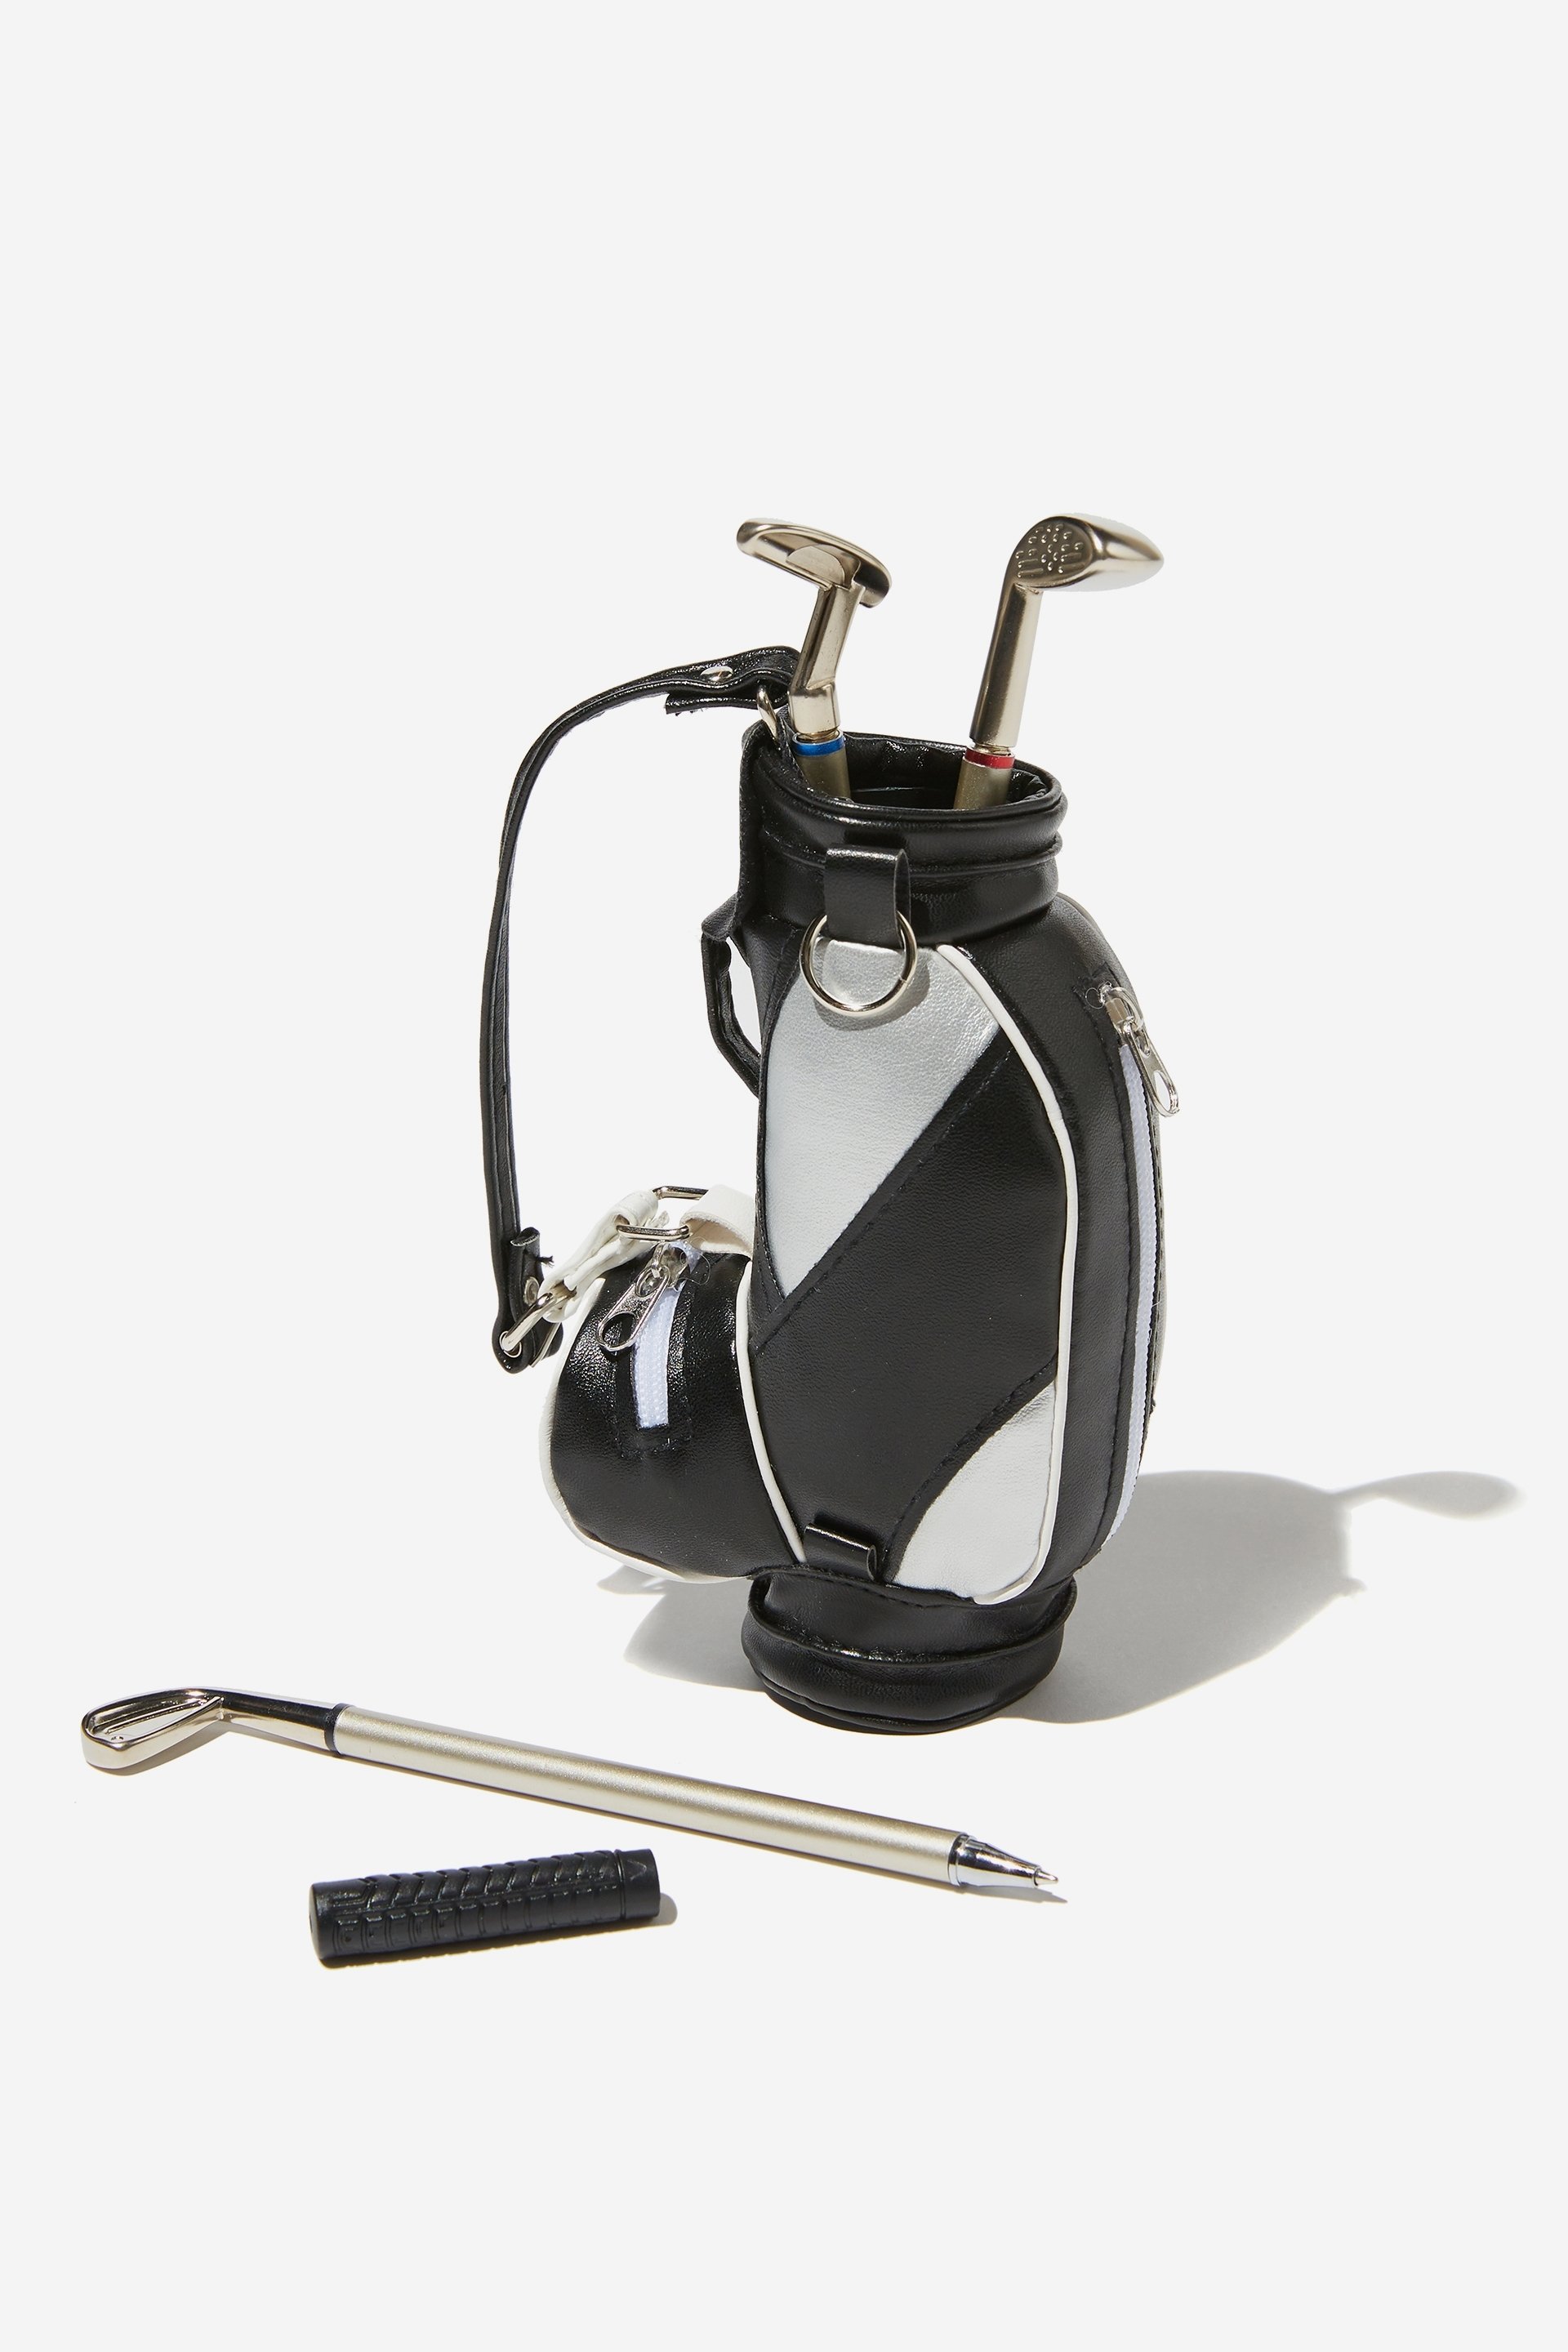 Typo - Caddy Golf Pen Set - Black & white